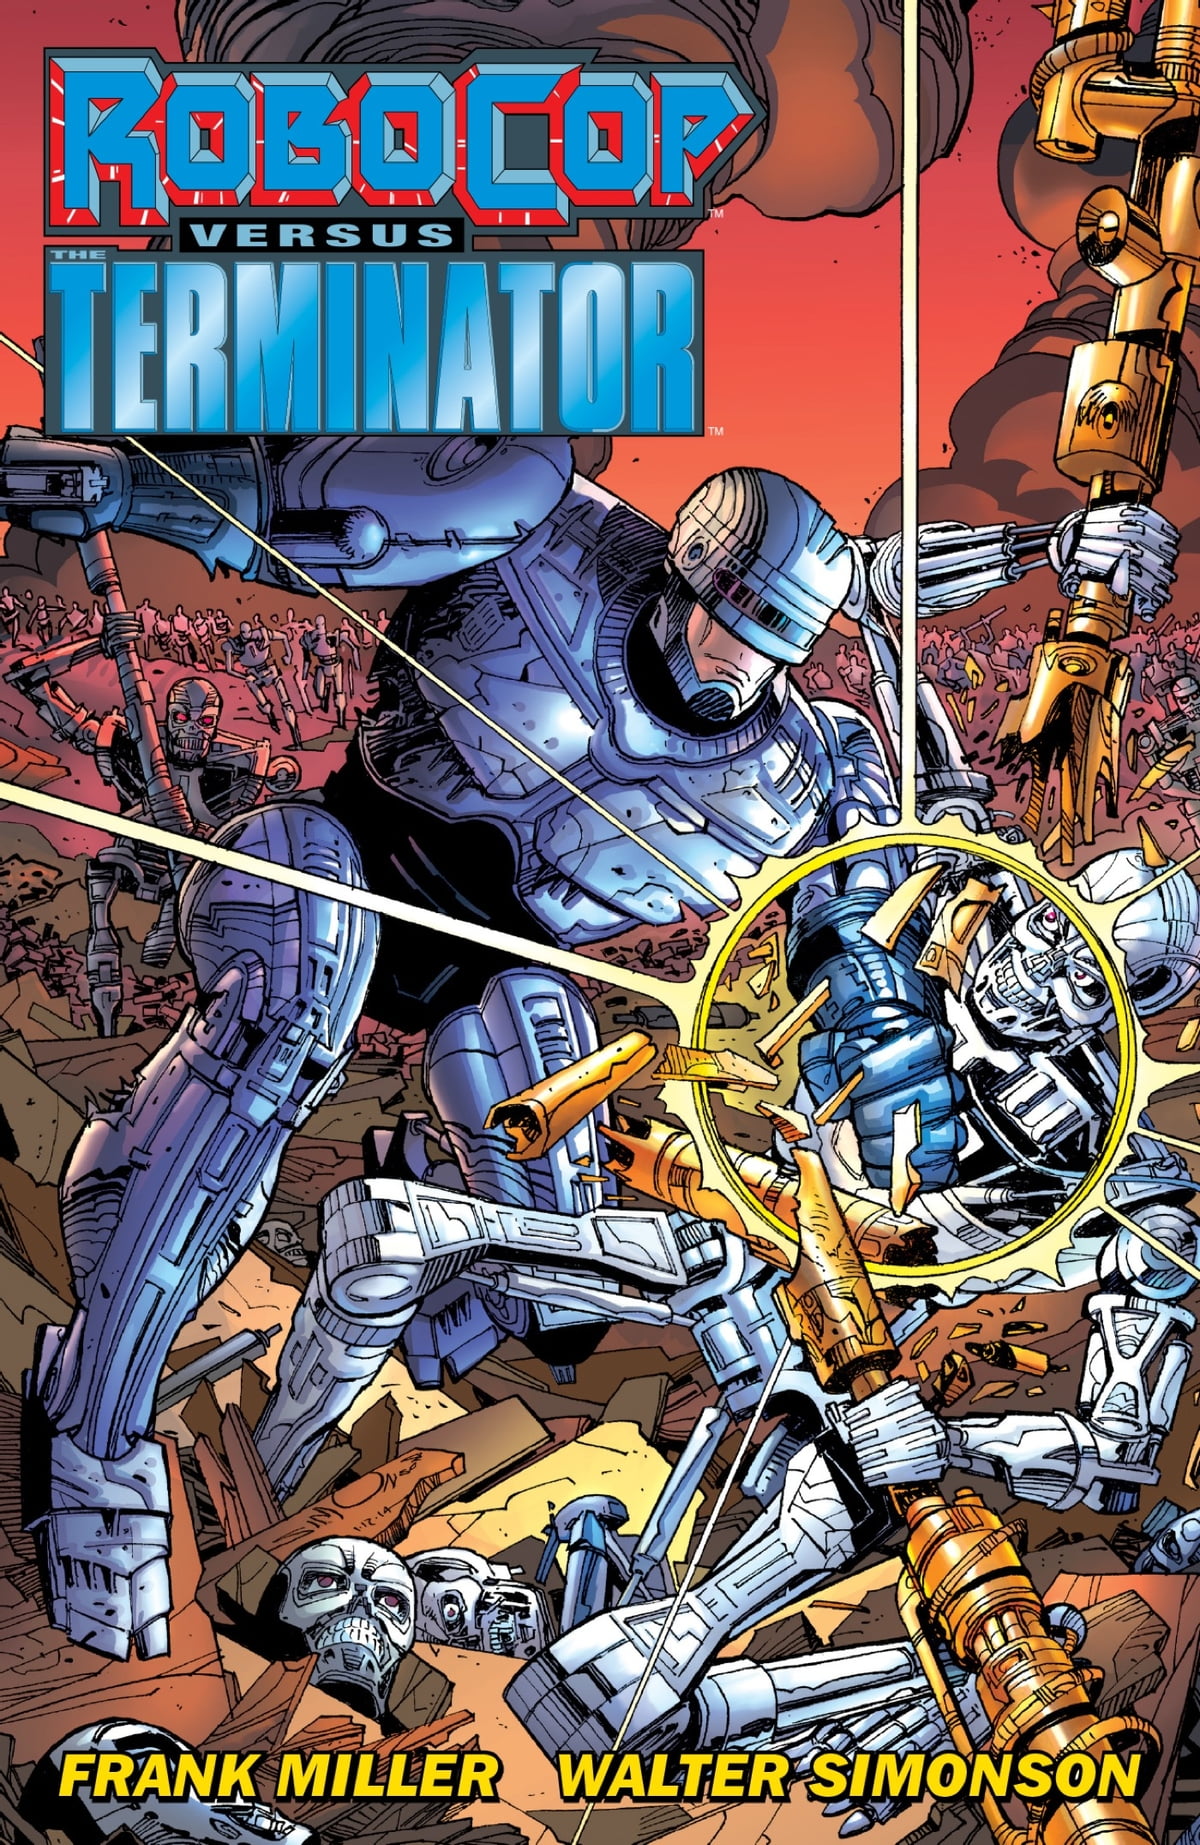 Leer Robocop vs Terminator Comic Online en Español